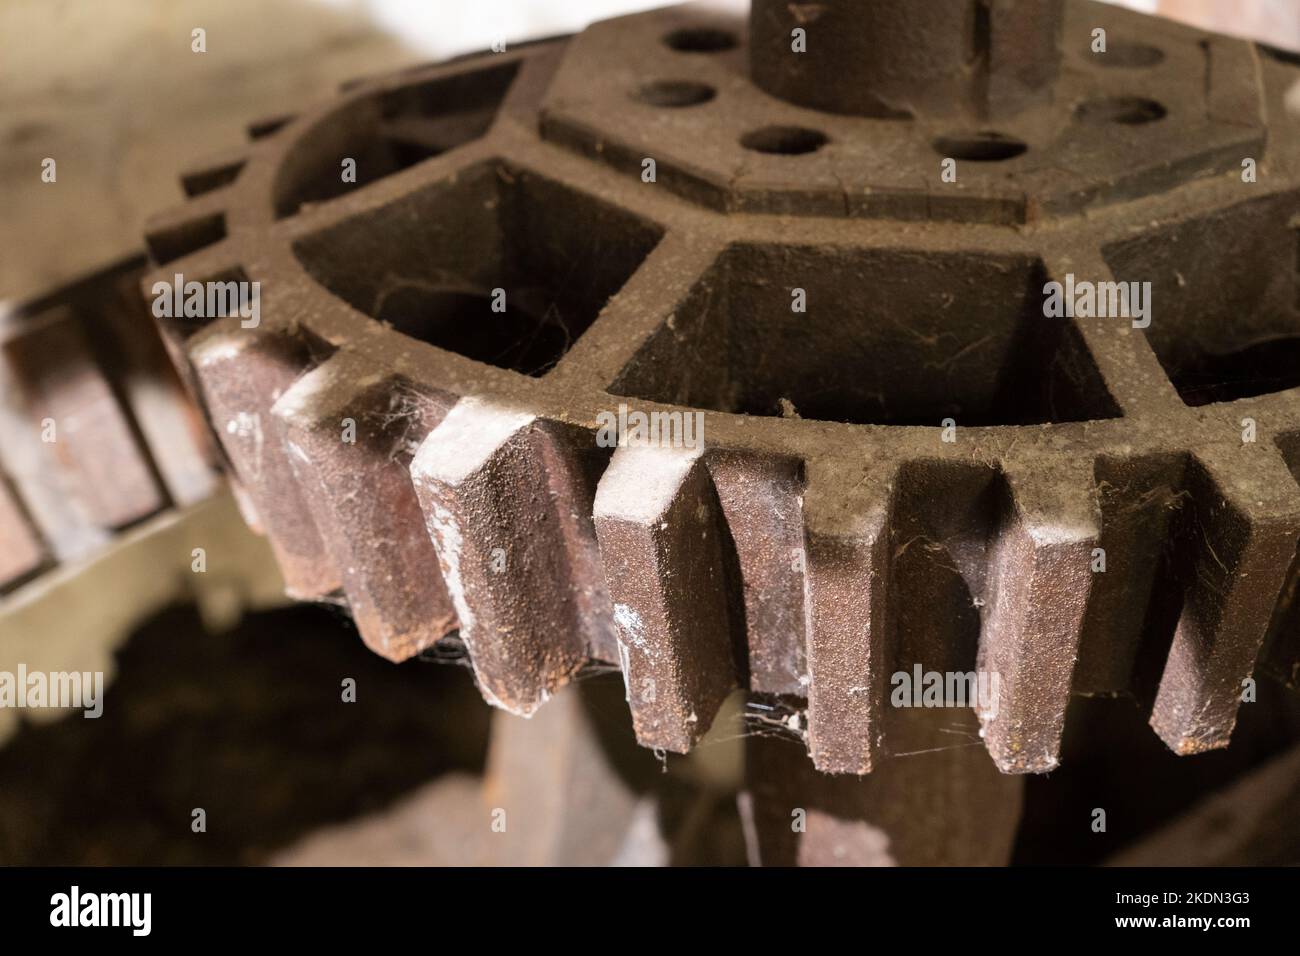 Engrenages et roues dentées faisant partie de l'ancienne machine de l'usine Millstone, Bartons Mill, Old Bashing, Basingstoke, Royaume-Uni Banque D'Images